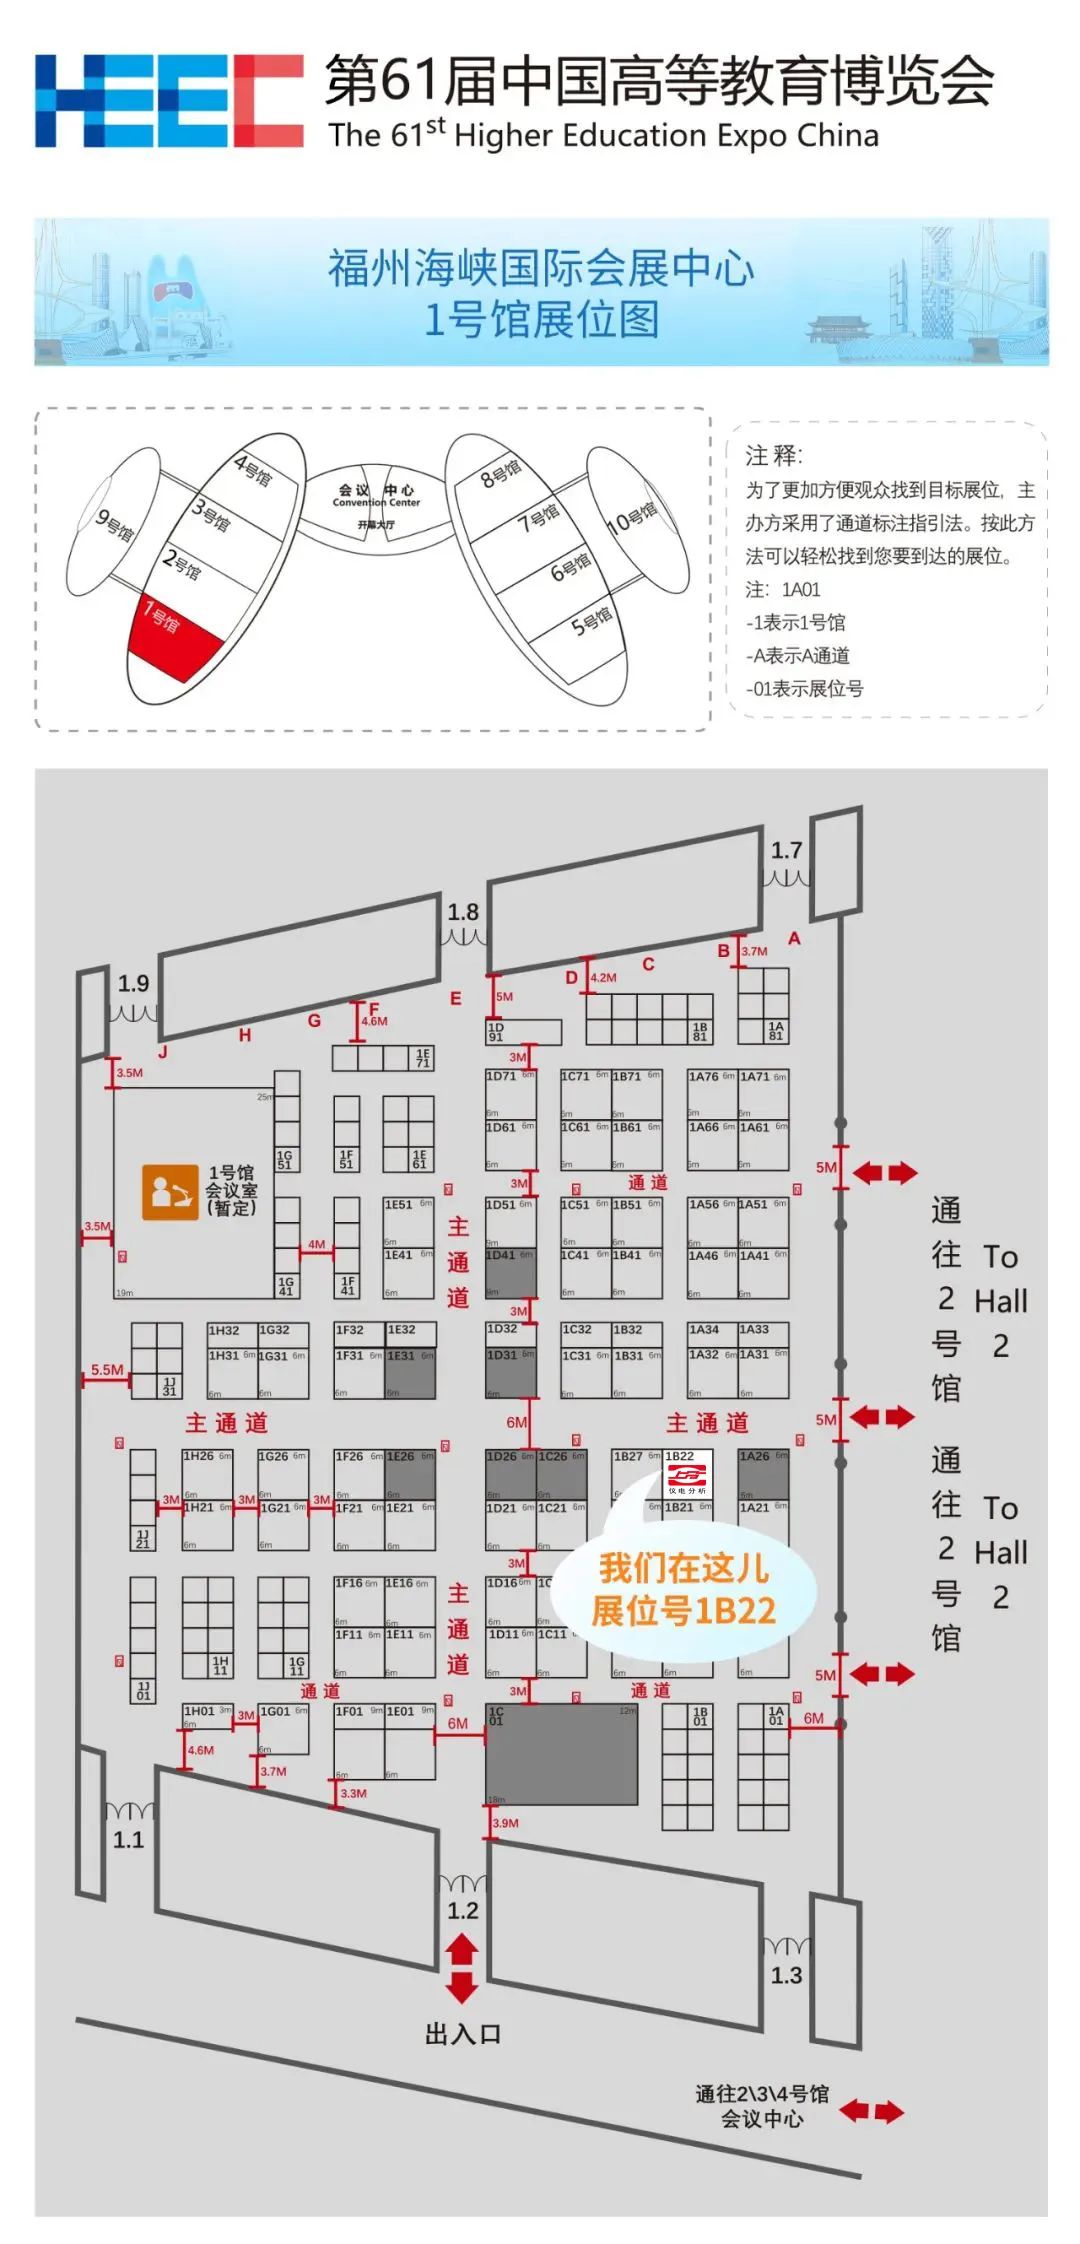 【仪电分析】第61届中国高等教育博览会·前瞻